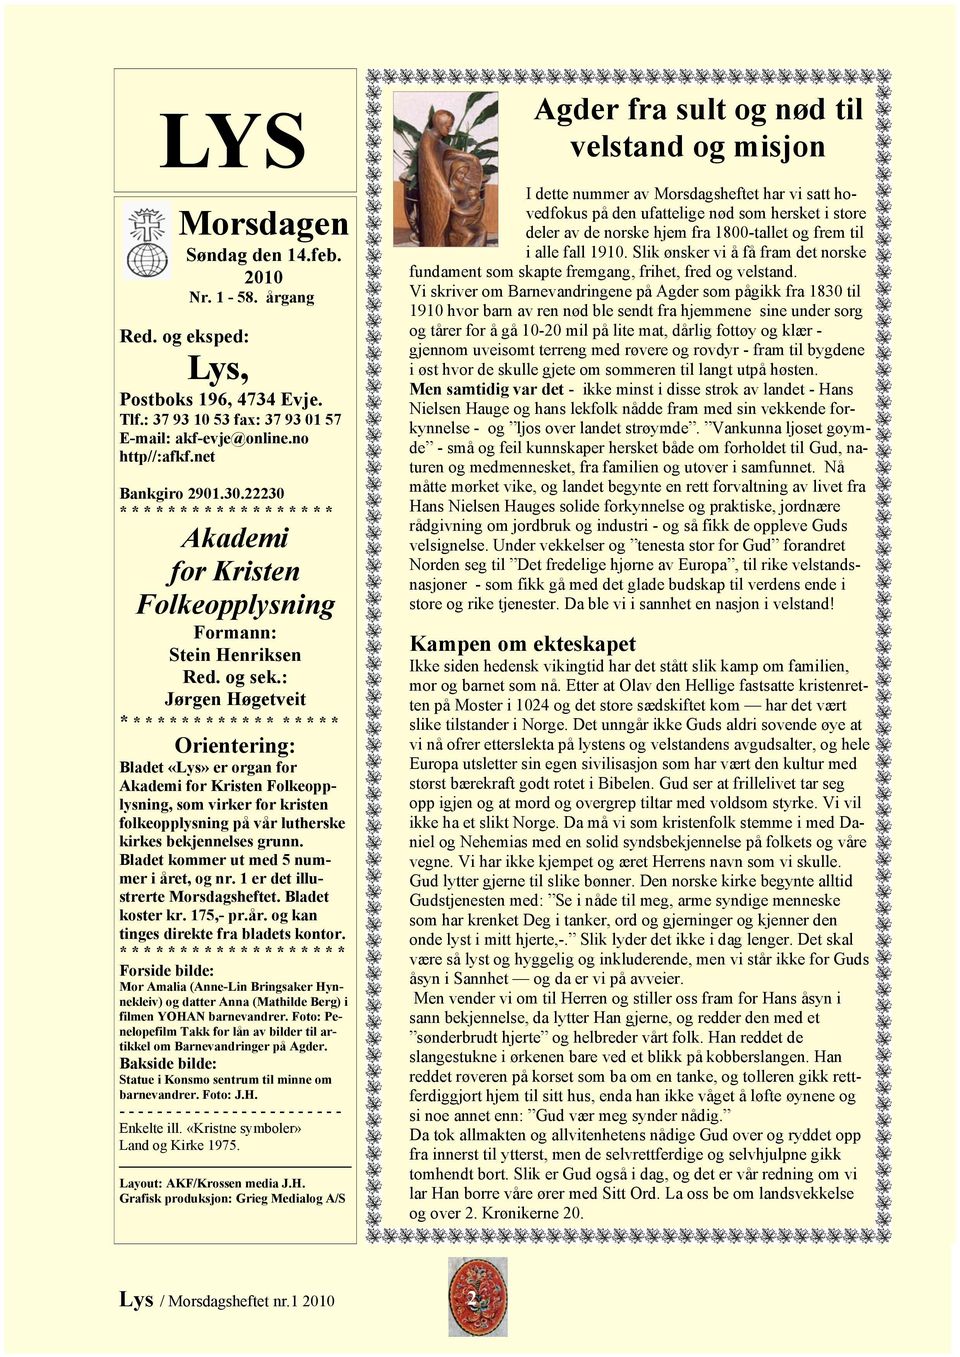 : Jørgen Høgetveit * * * * * * * * * * * * * * * * * * Orientering: Bladet «Lys» er organ for Akademi for Kristen Folkeopplysning, som virker for kristen folkeopplysning på vår lutherske kirkes